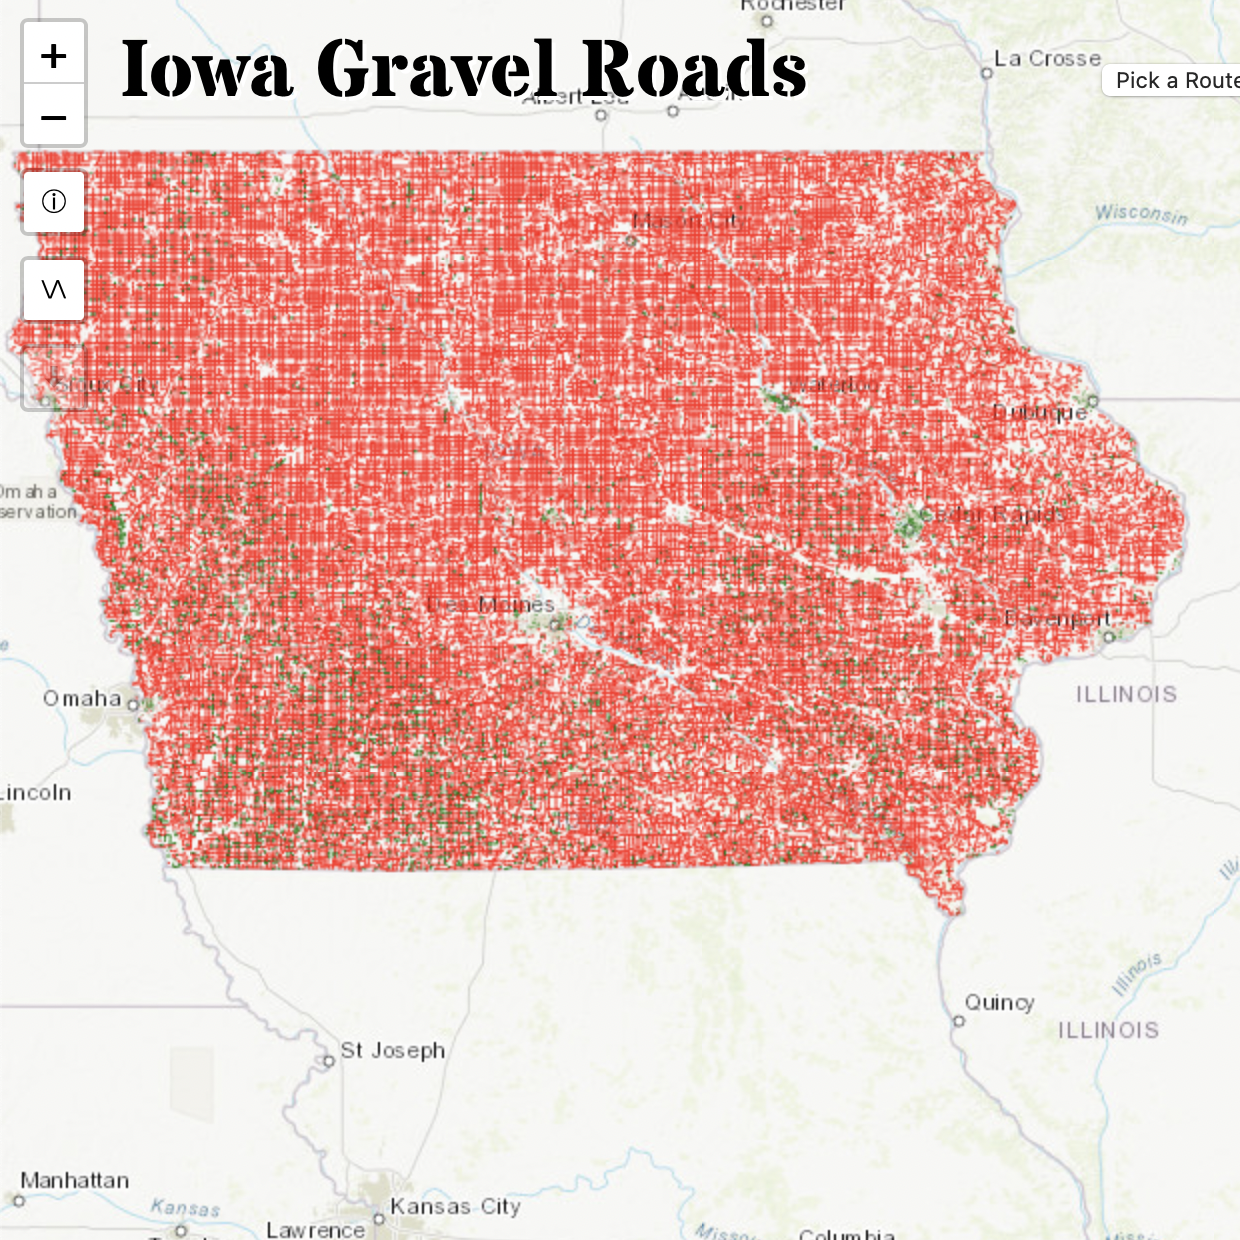 Iowa Gravel Roads